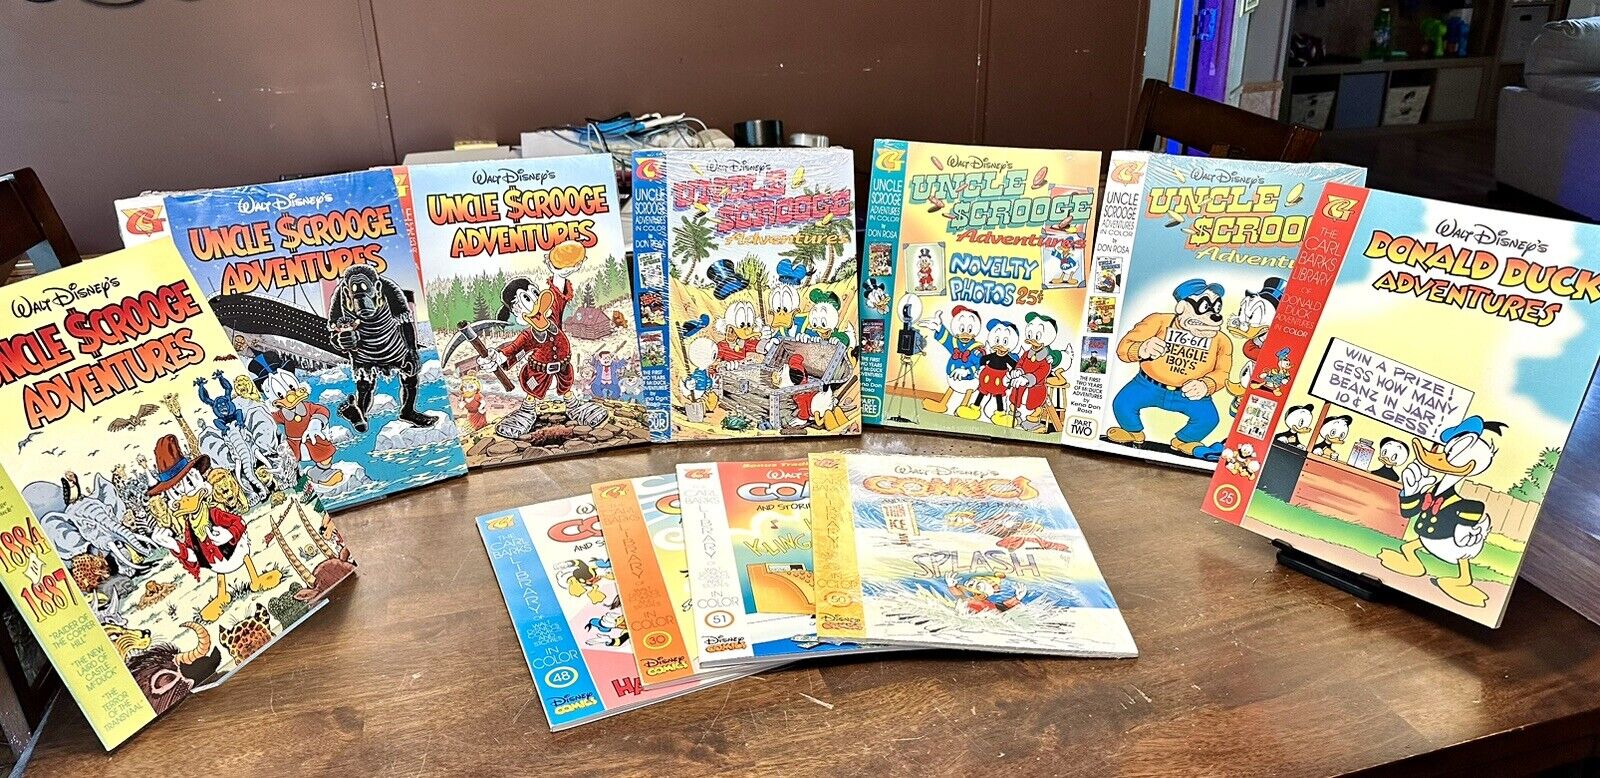 Walt Disney’s uncle Scrooge adventures Comics Lot